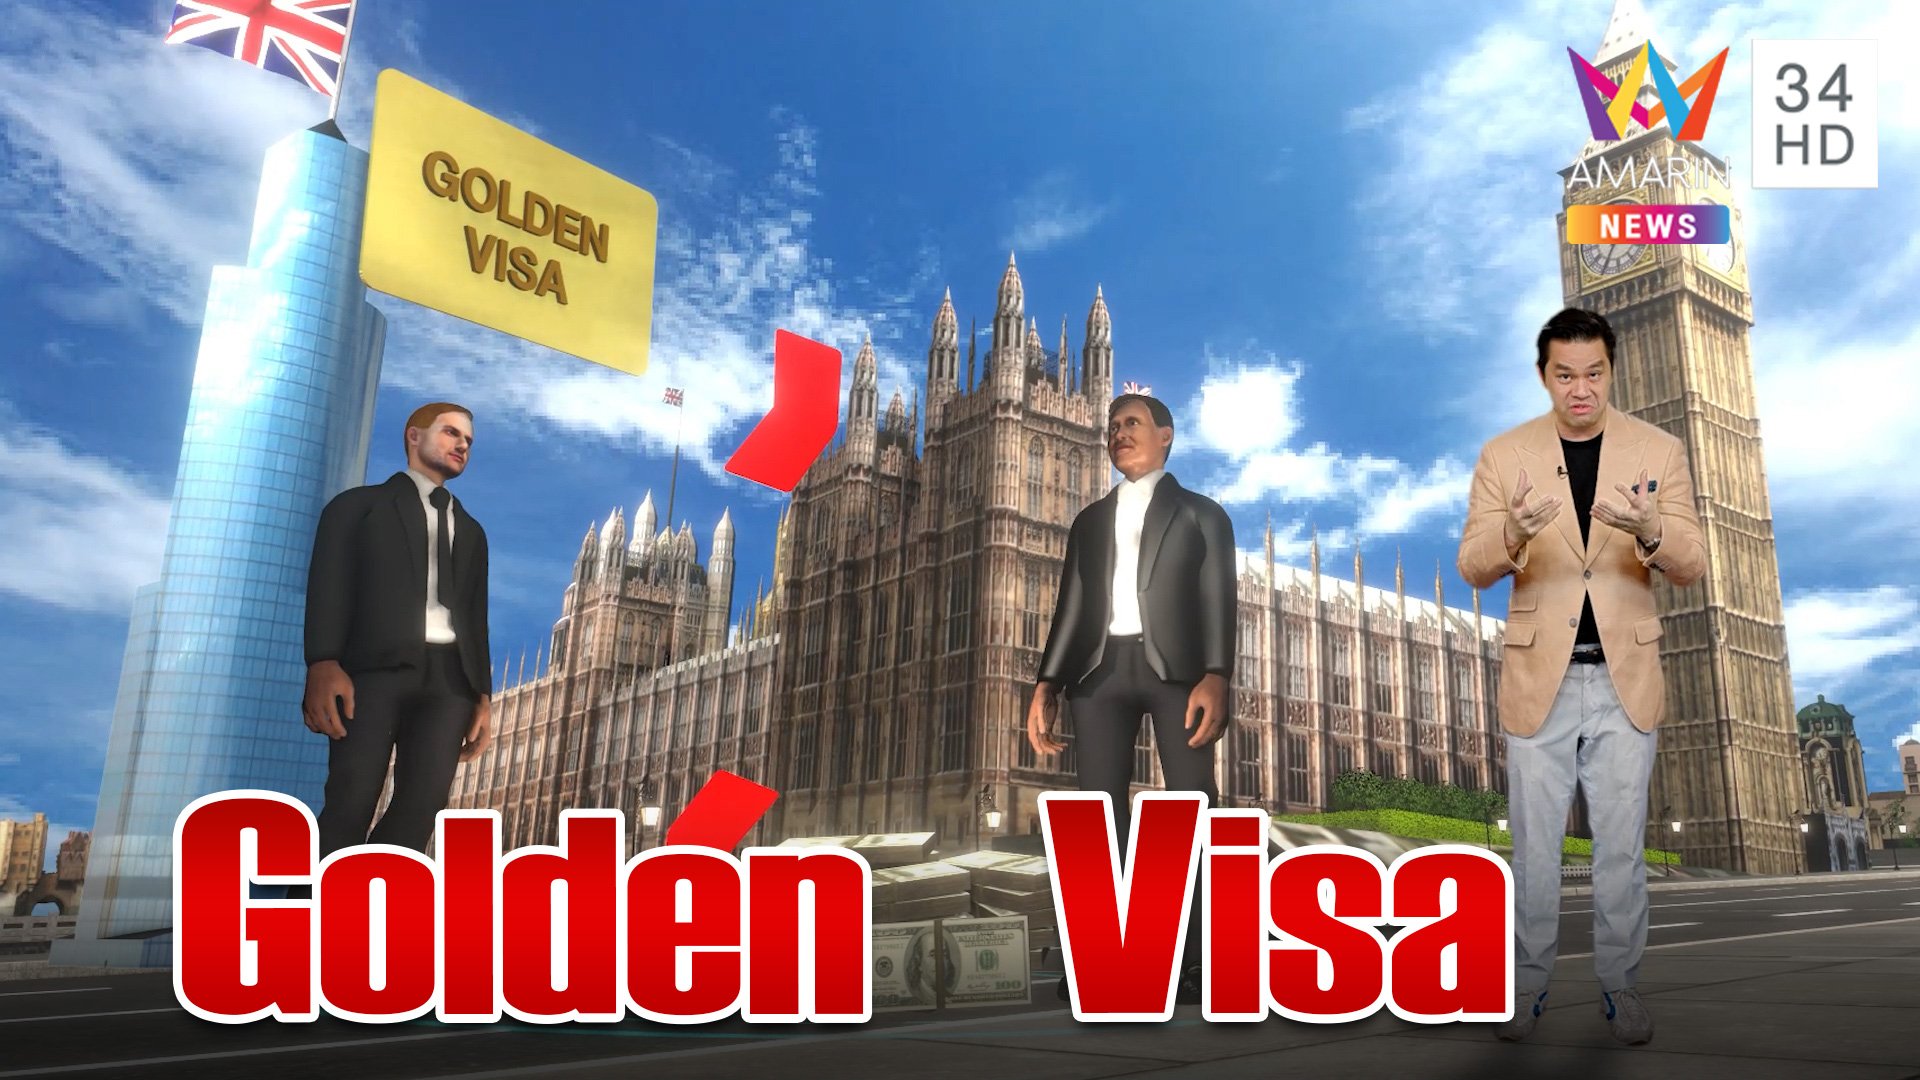 รู้จัก "Golden Visa" วีซ่าทองใบเบิกทางของการเดินทางข้ามประเทศ | ทุบโต๊ะข่าว | 21 ก.ย. 66 | AMARIN TVHD34